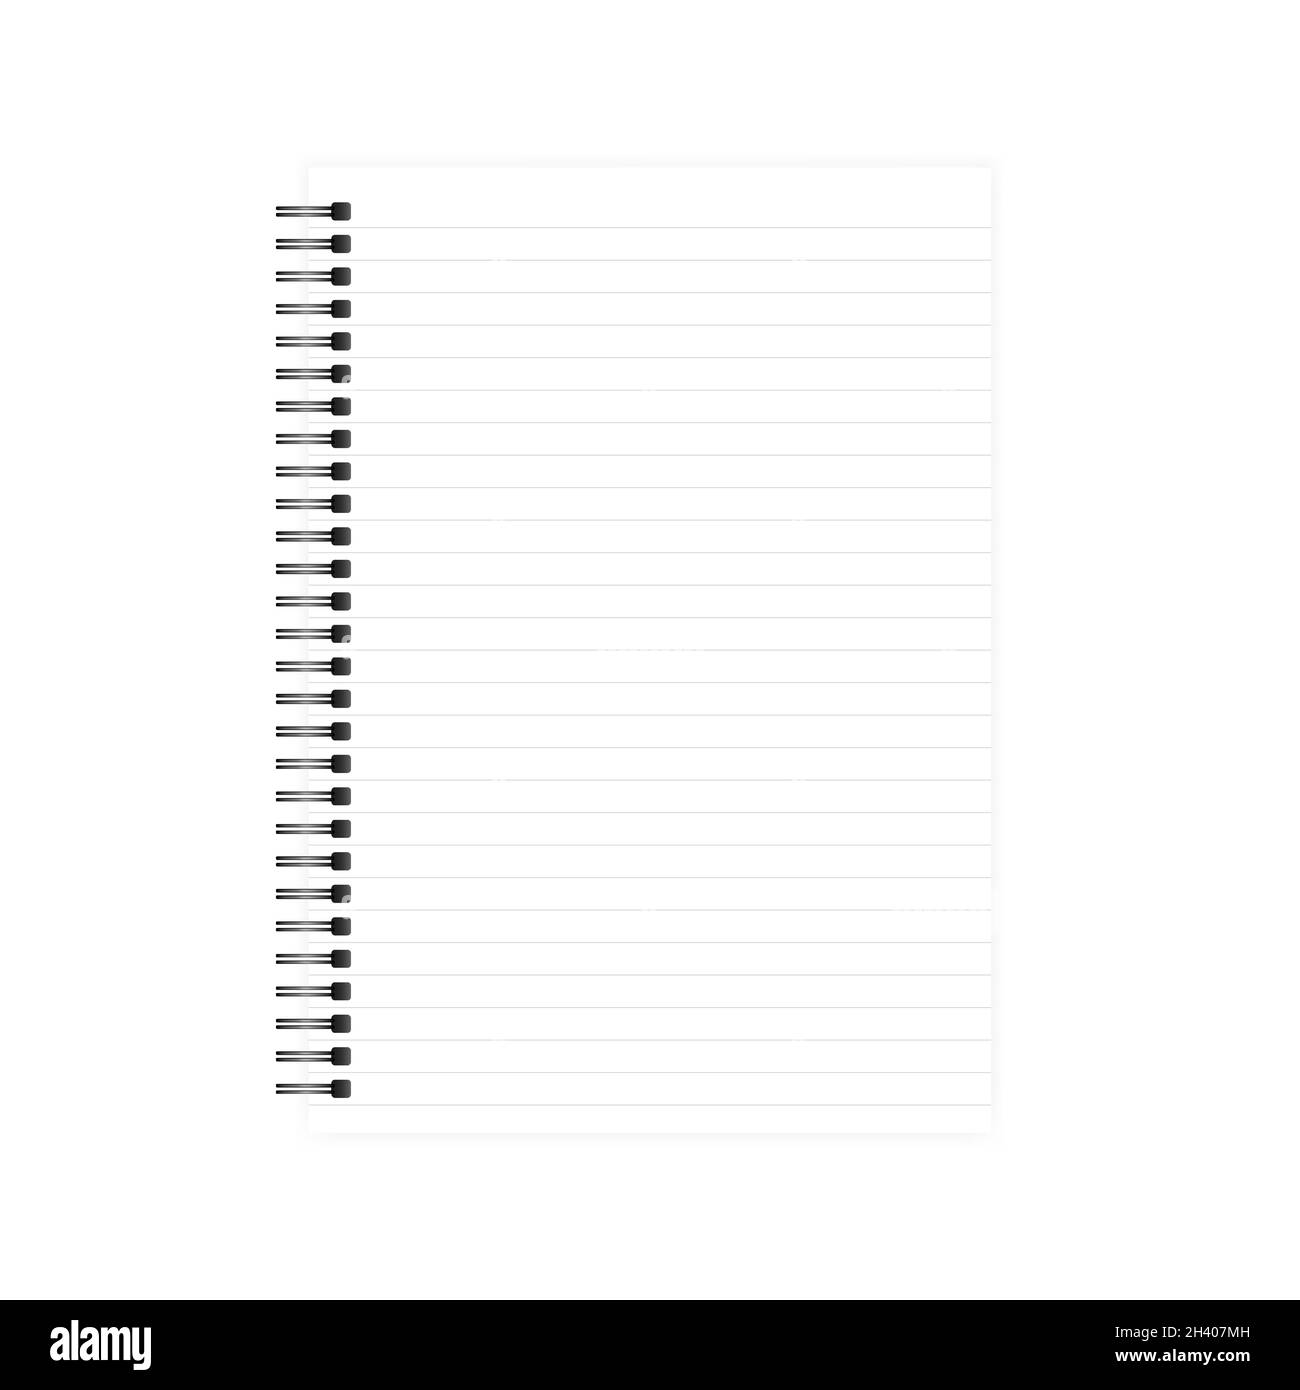 Diary page exercise Banque d'images noir et blanc - Alamy